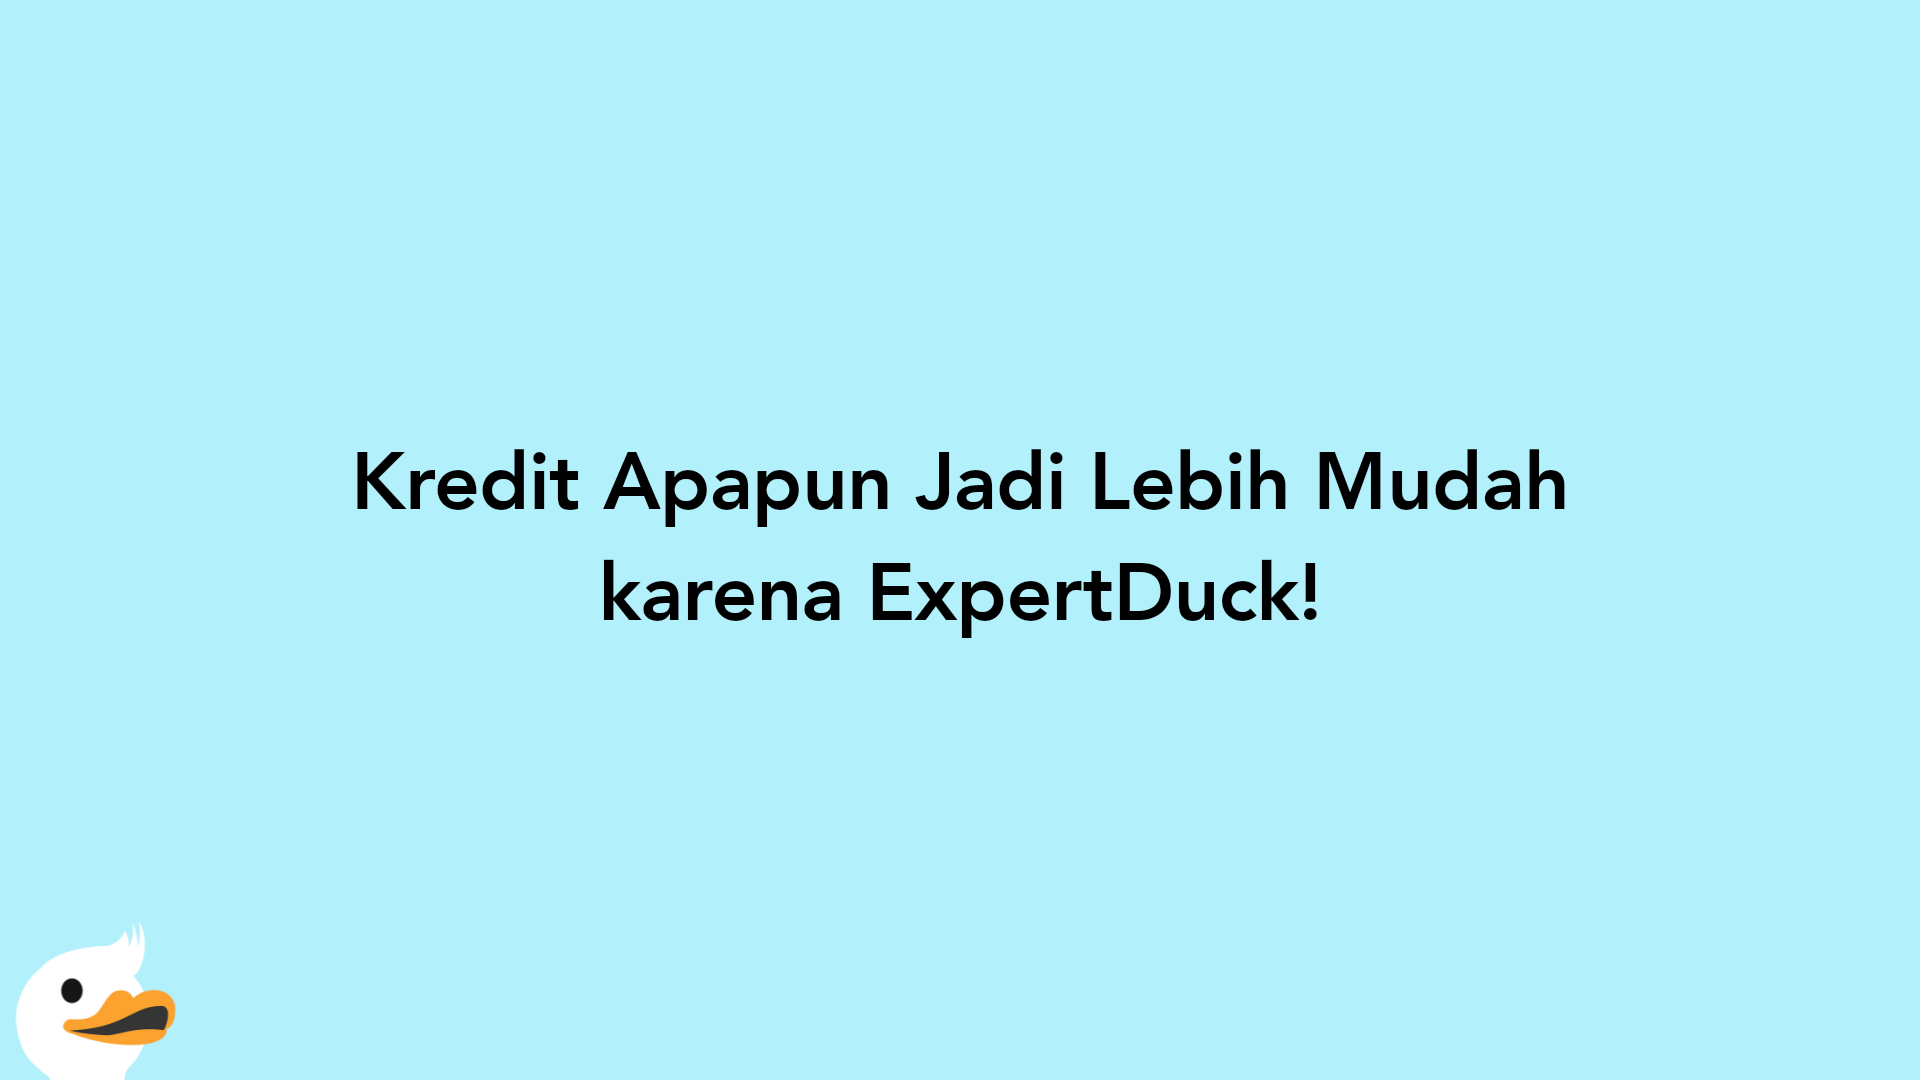 Kredit Apapun Jadi Lebih Mudah karena ExpertDuck!